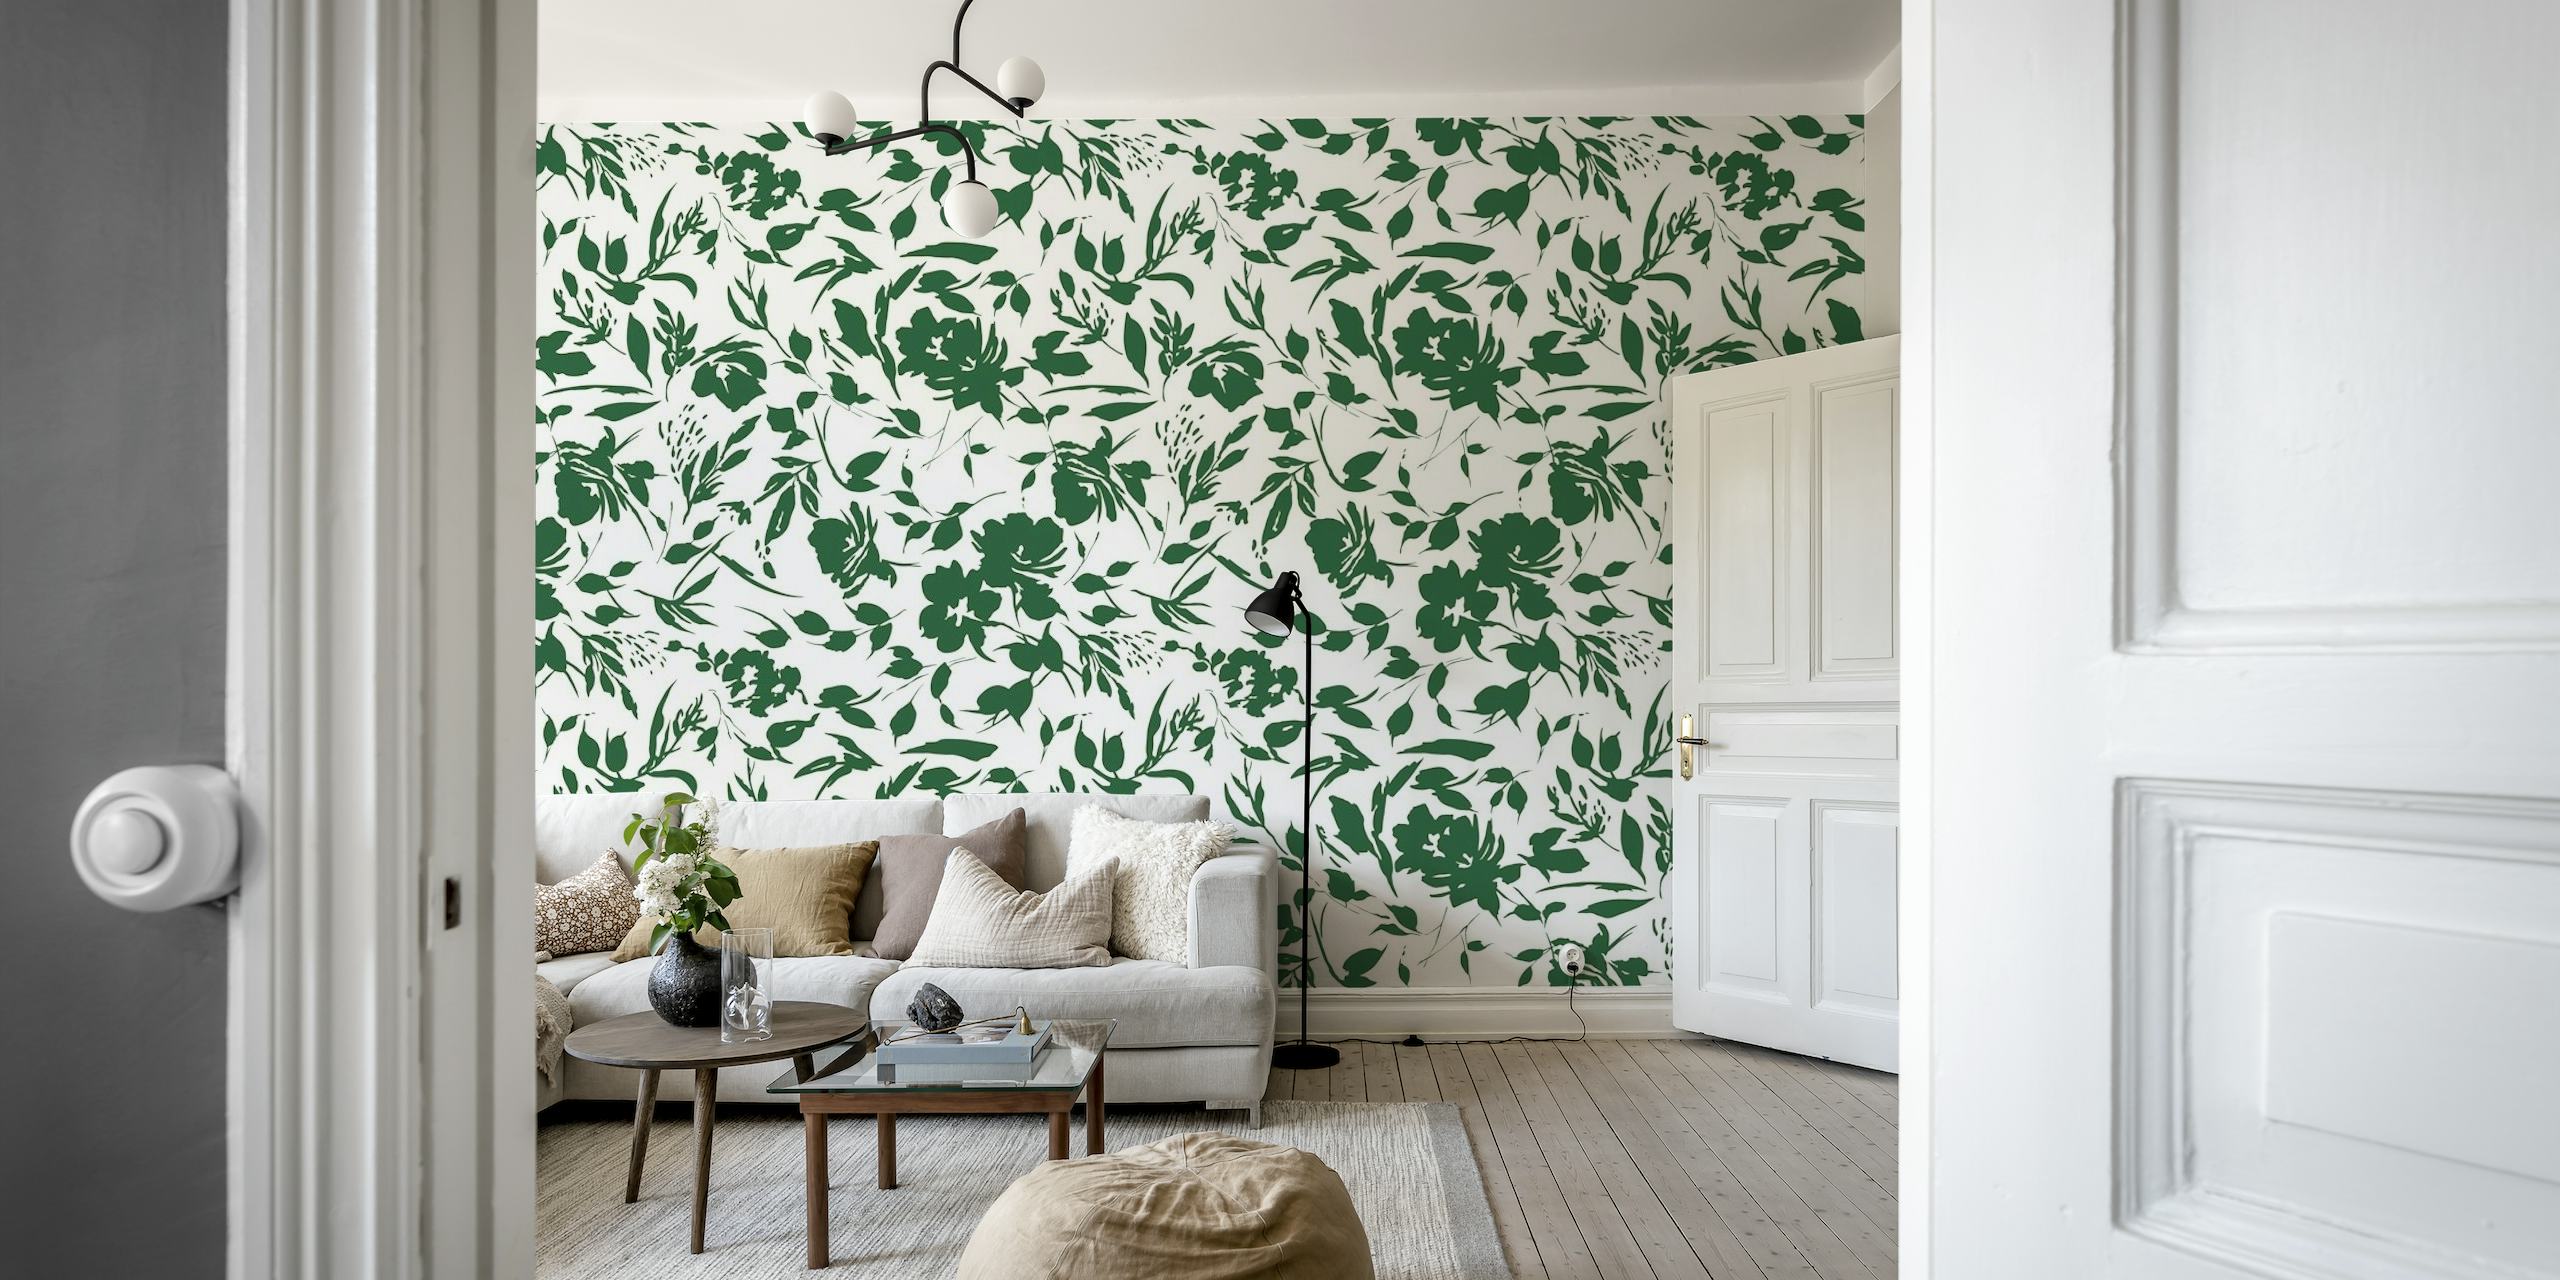 Mural de parede monocromático com tema de jardim selvagem mostrando padrões florais em preto e branco